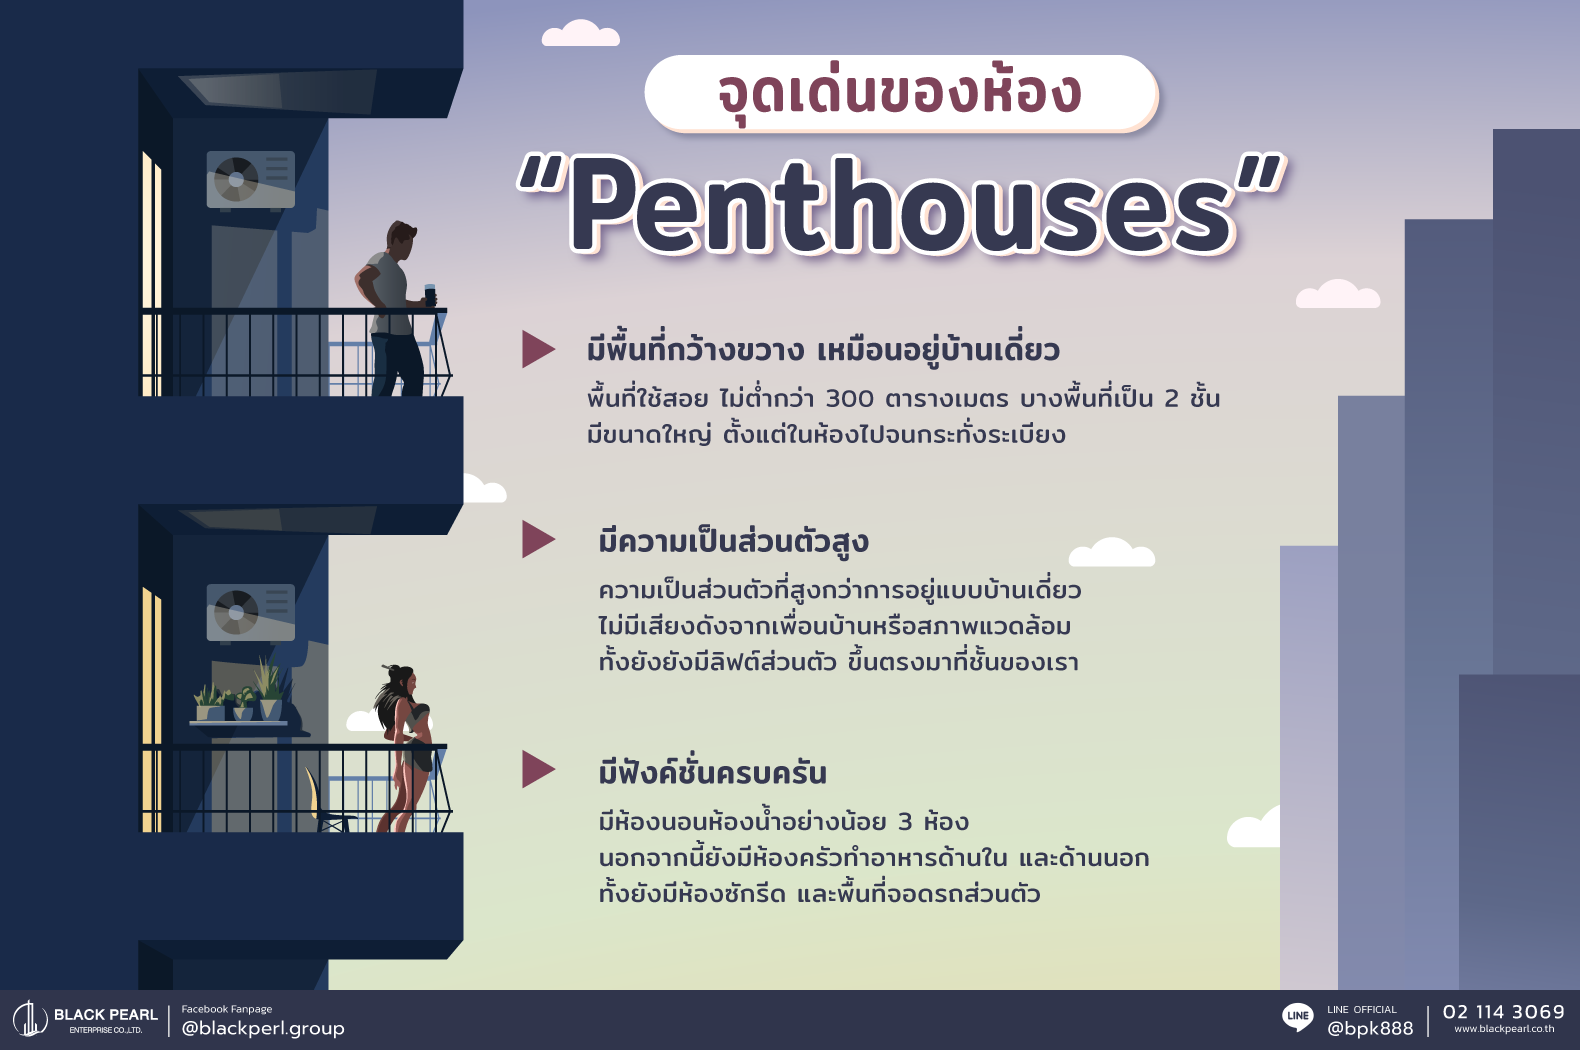 จุดเด่นของห้อง Penthouse